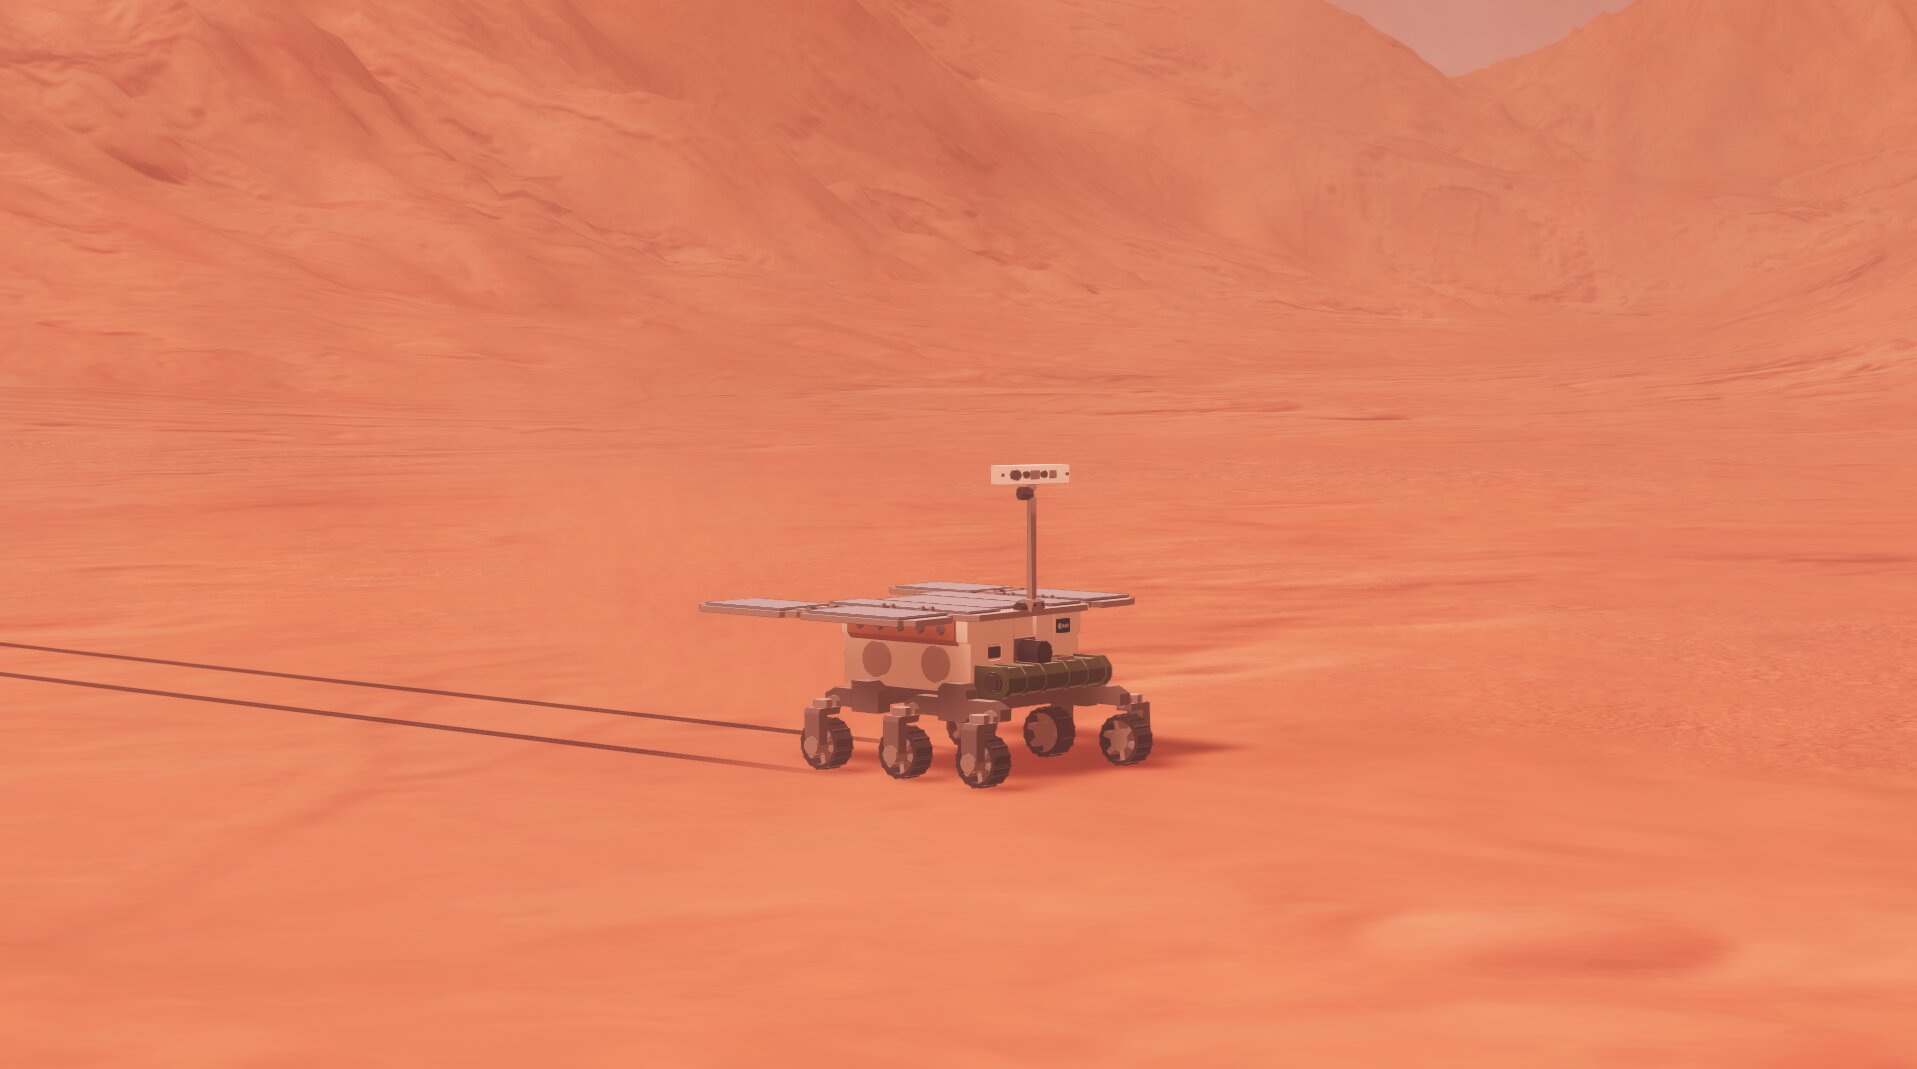 ЕКА запускает игру Mars Horizon. Она научит осваивать космос